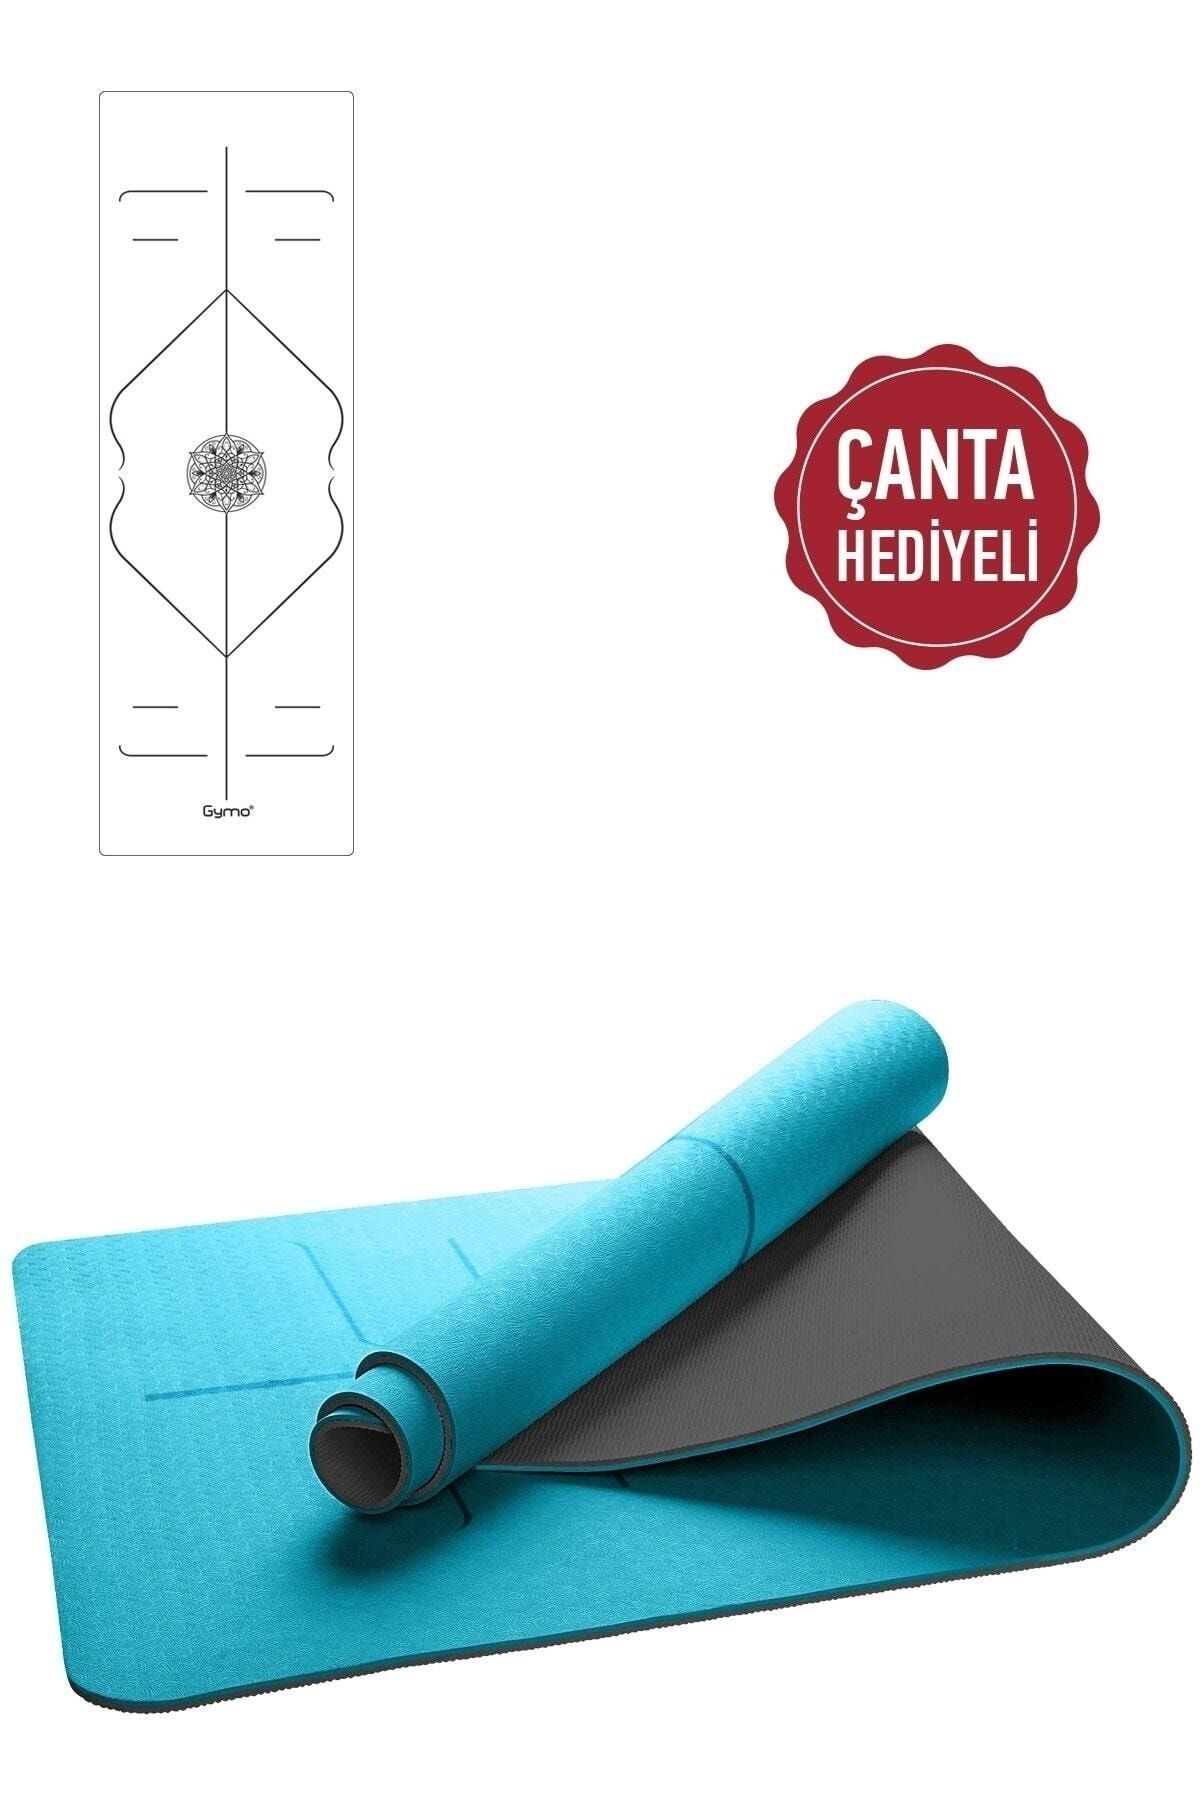 Gymo Hizalamalı 6mm Tpe Yoga Matı Pilates Minderi Turkuaz Taşıma Çantalı